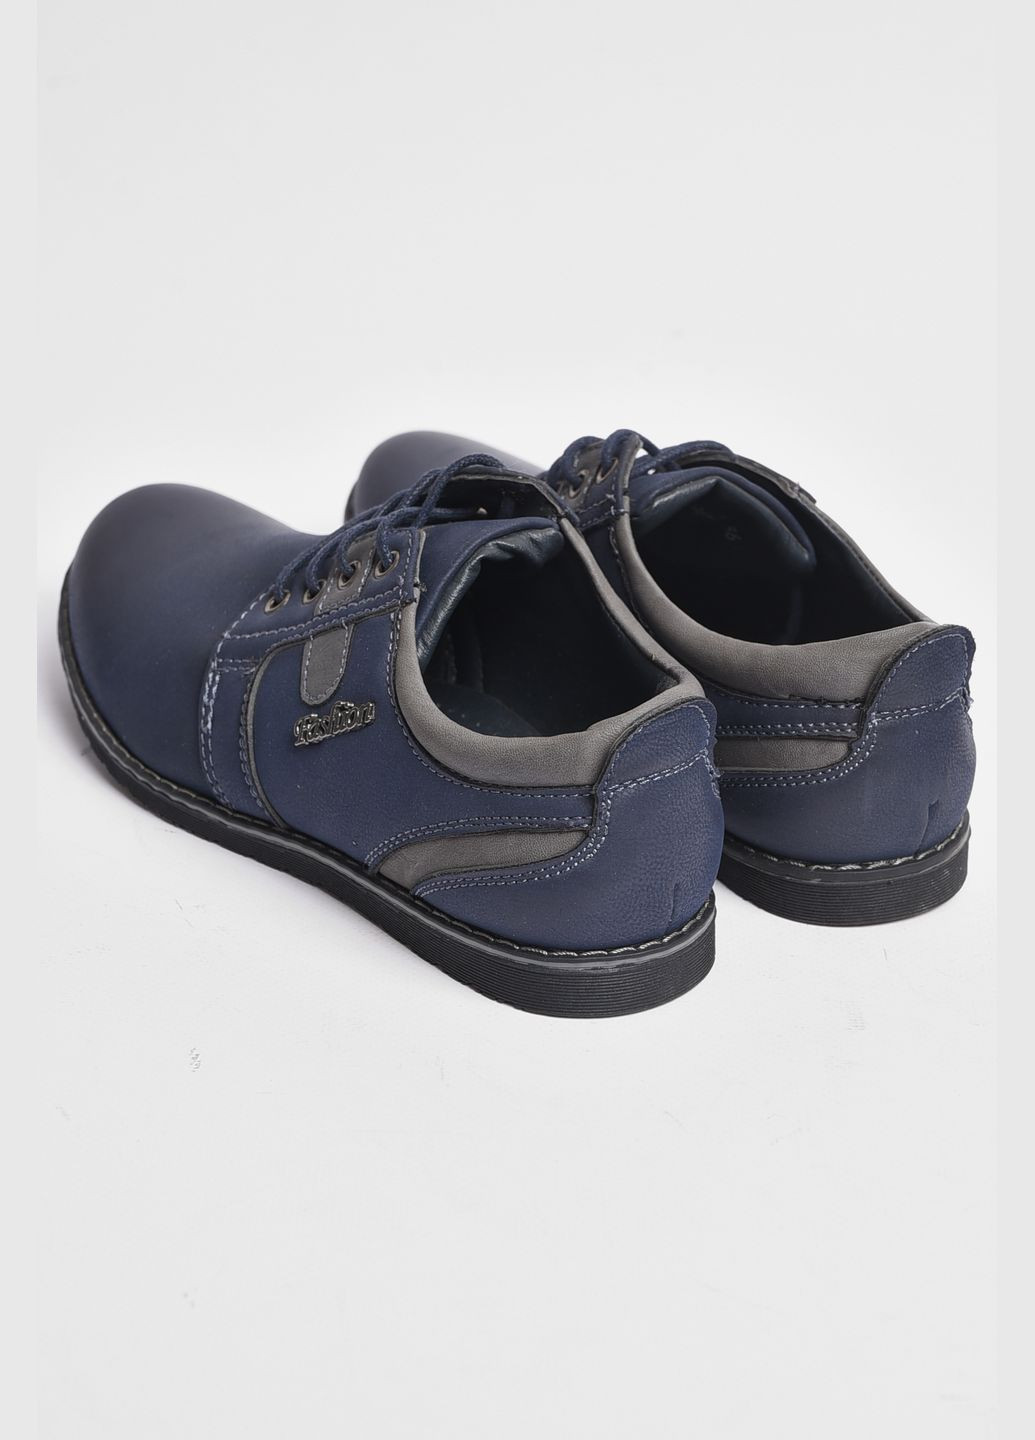 Темно-синие туфли подростковые для мальчика темно-синего цвета без шнурков Let's Shop